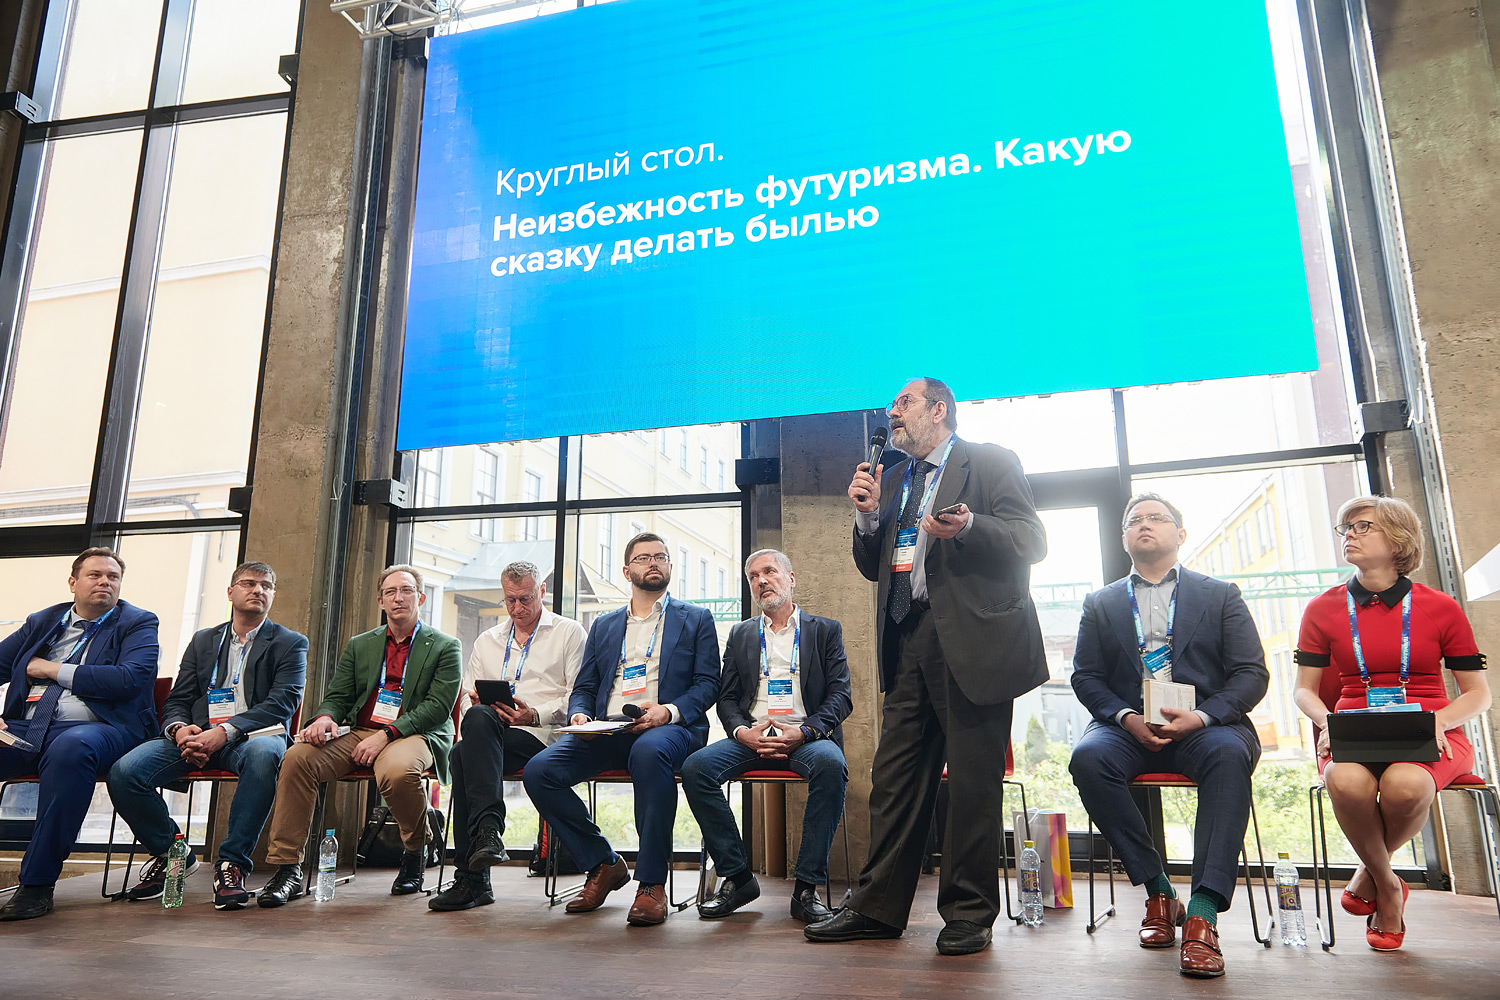 27 мая в рамках Телемедфорума 2021 в Санкт-Петербурге состоялась сессия «Неизбежность футуризма. Какую сказку делать былью»